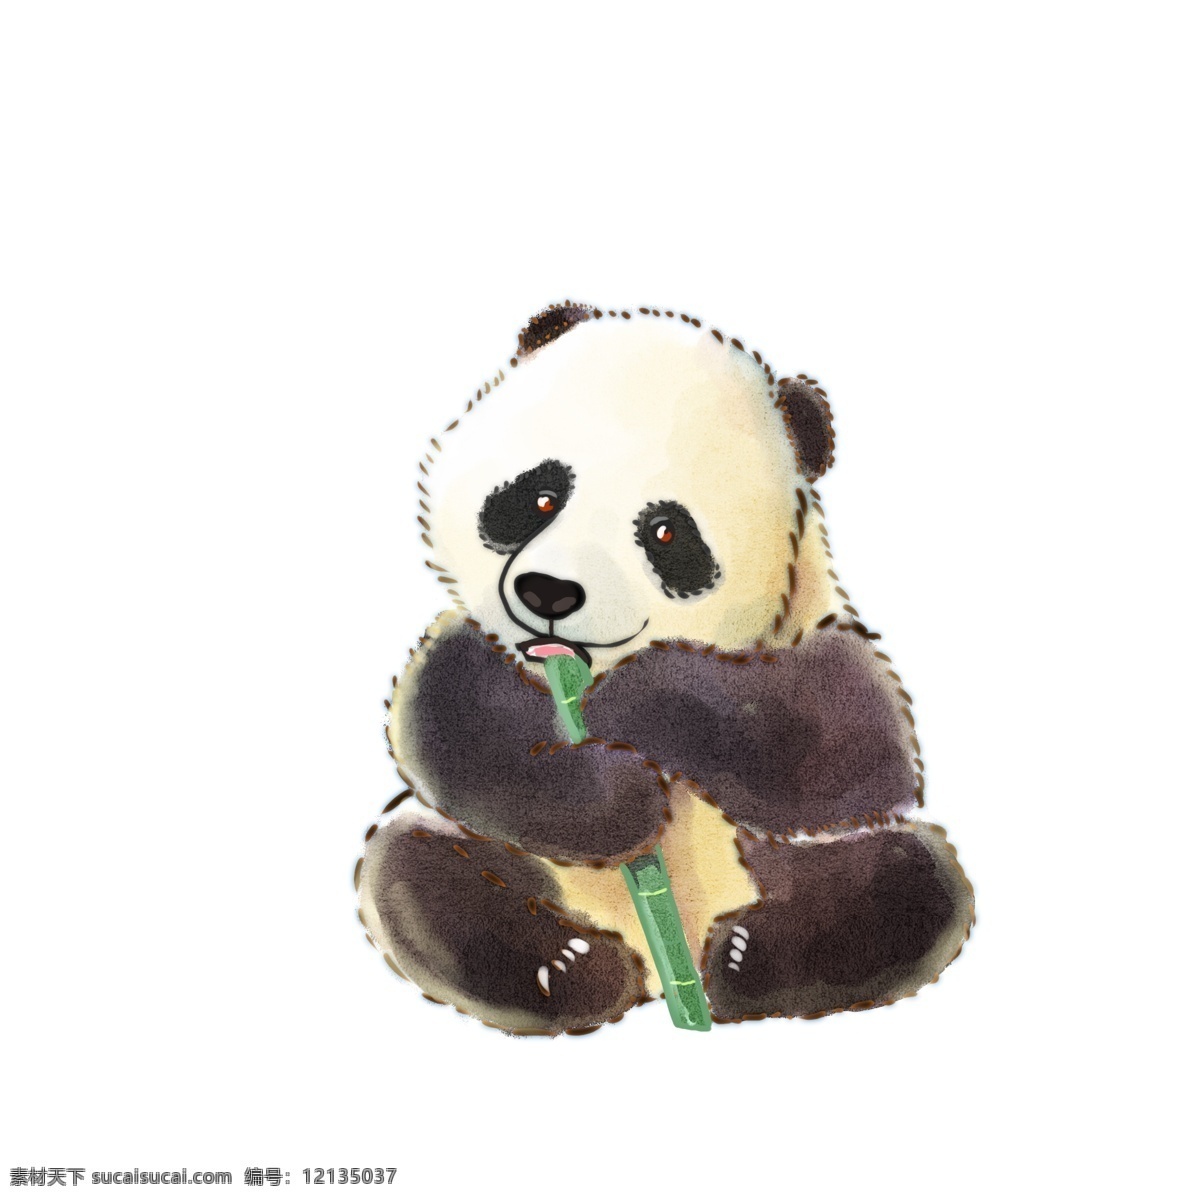 手绘 水彩 绘 卡通 熊猫 动漫动物 动物装饰 卡通动画 扁平动物 动漫 动物 可爱 插画 油彩 绘本 国宝